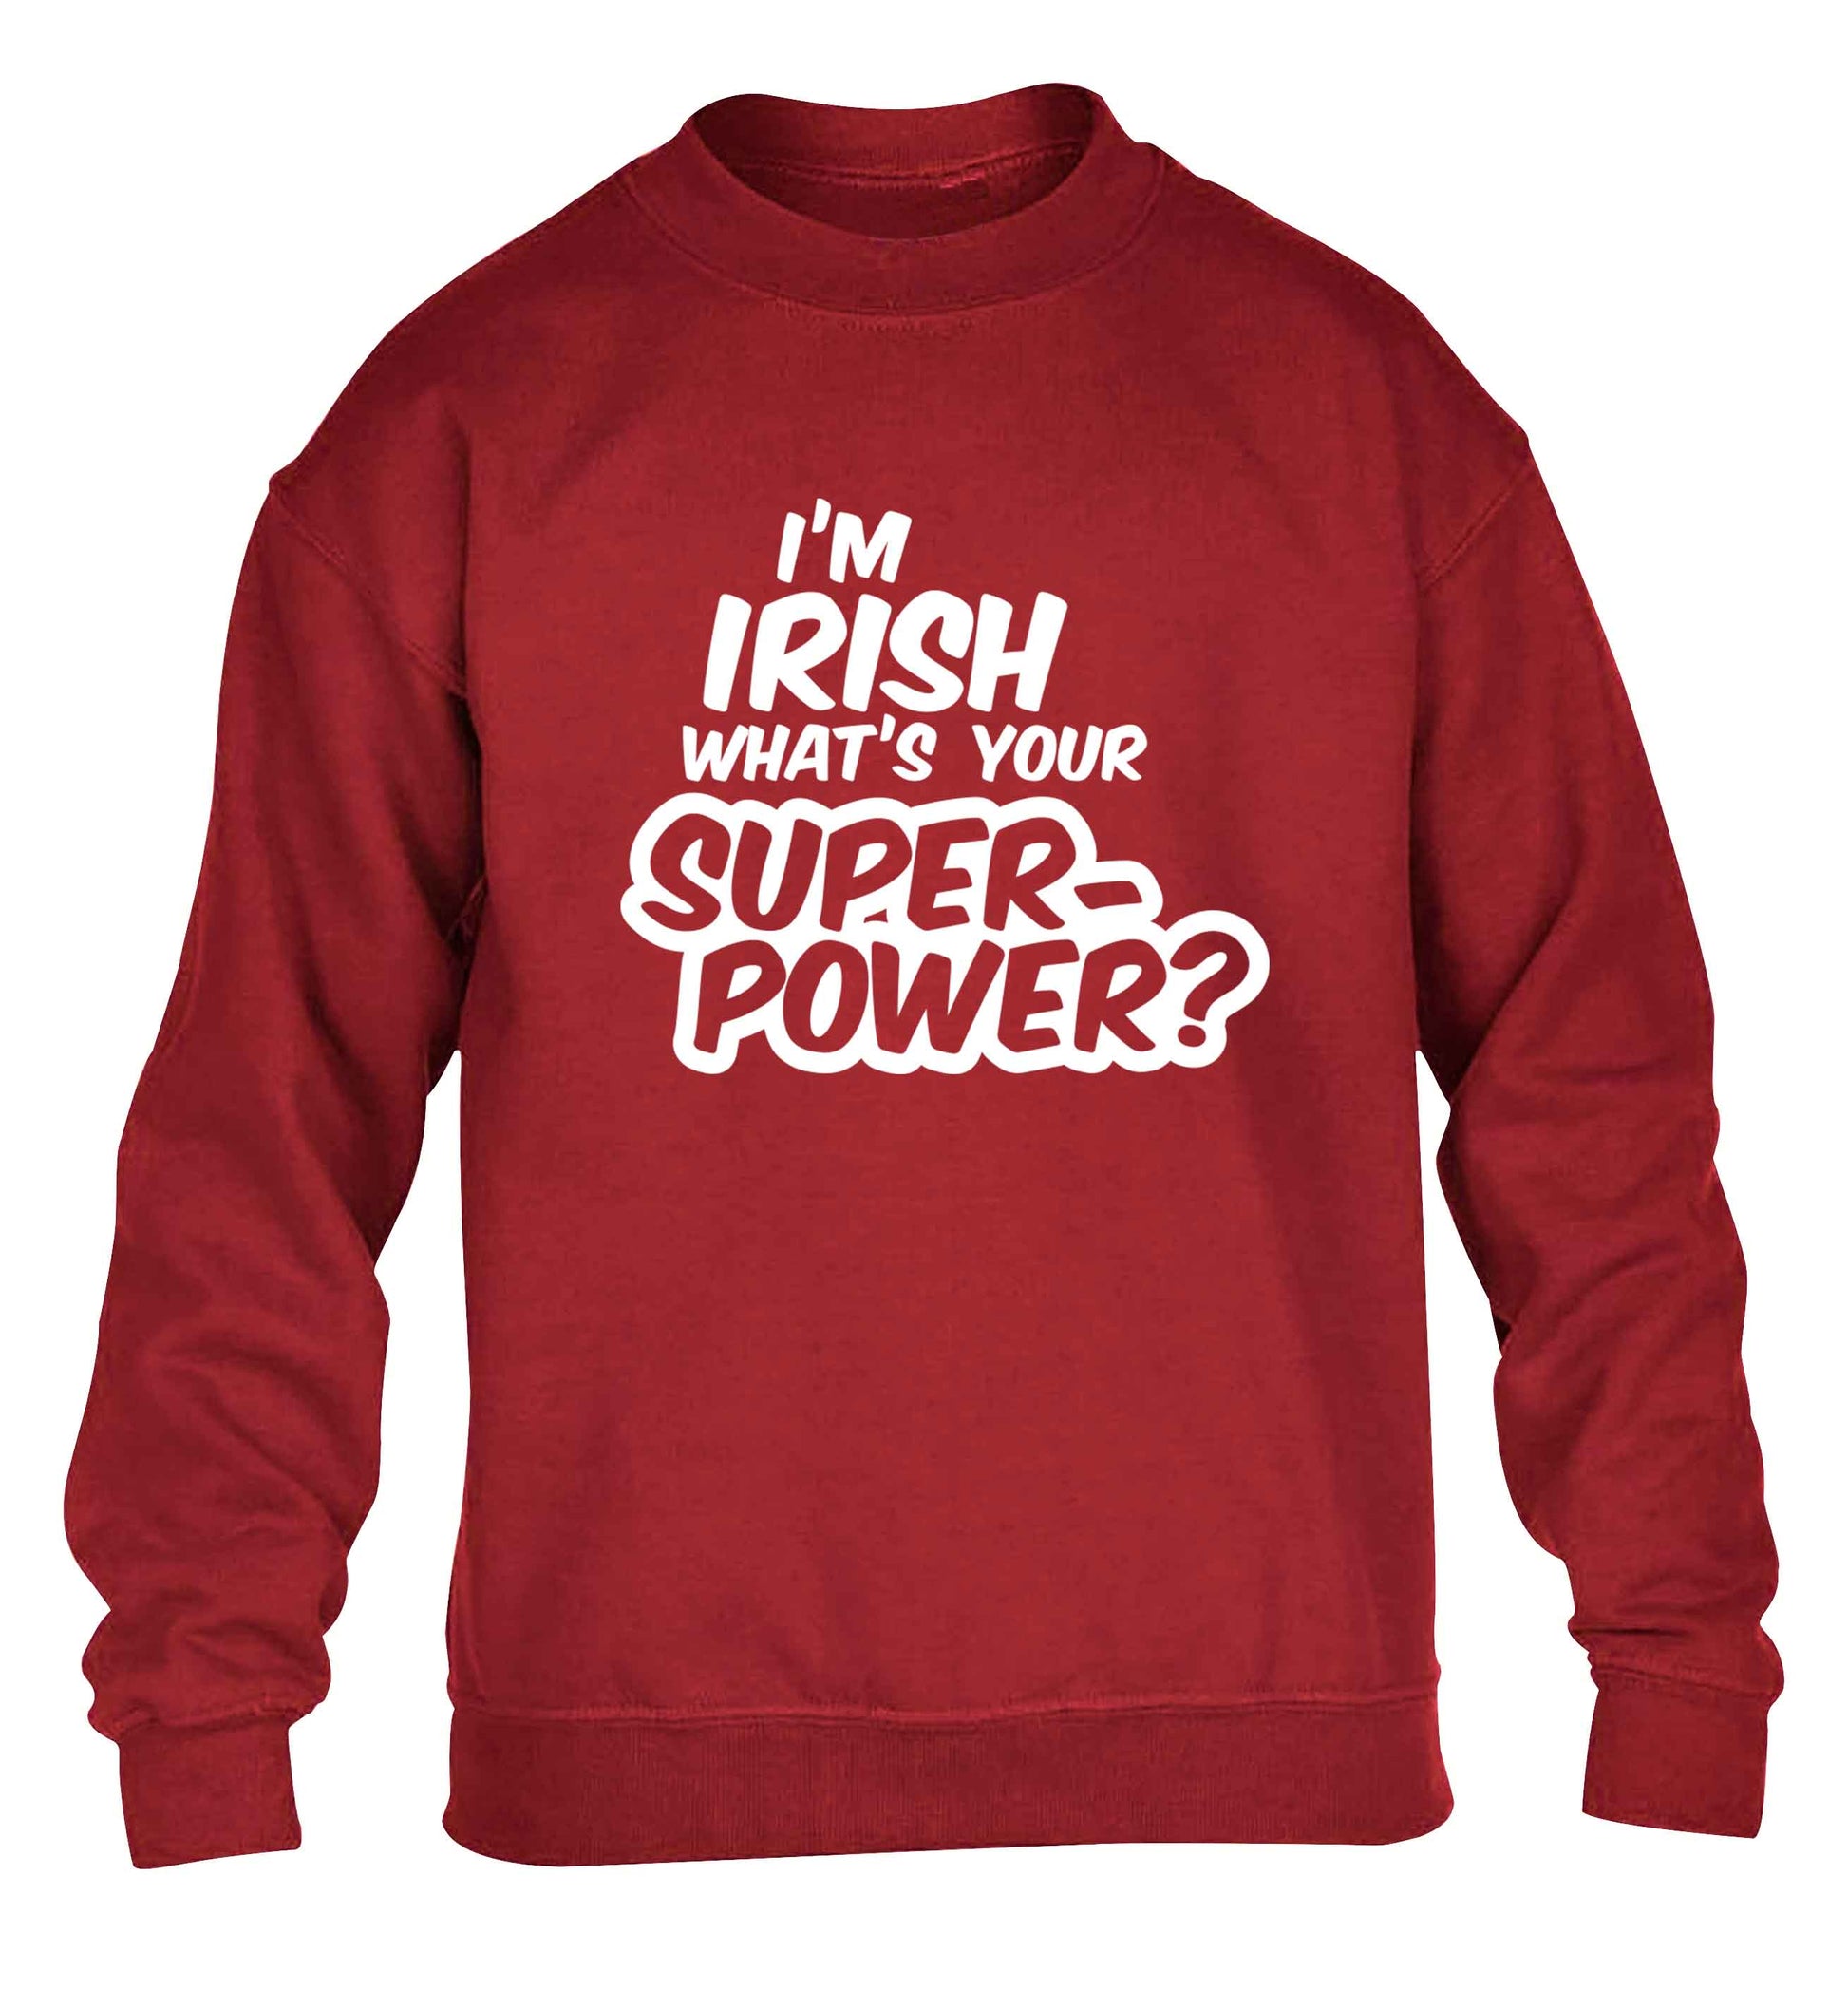 I'm Irish what's your superpower? children's grey sweater 12-13 Years